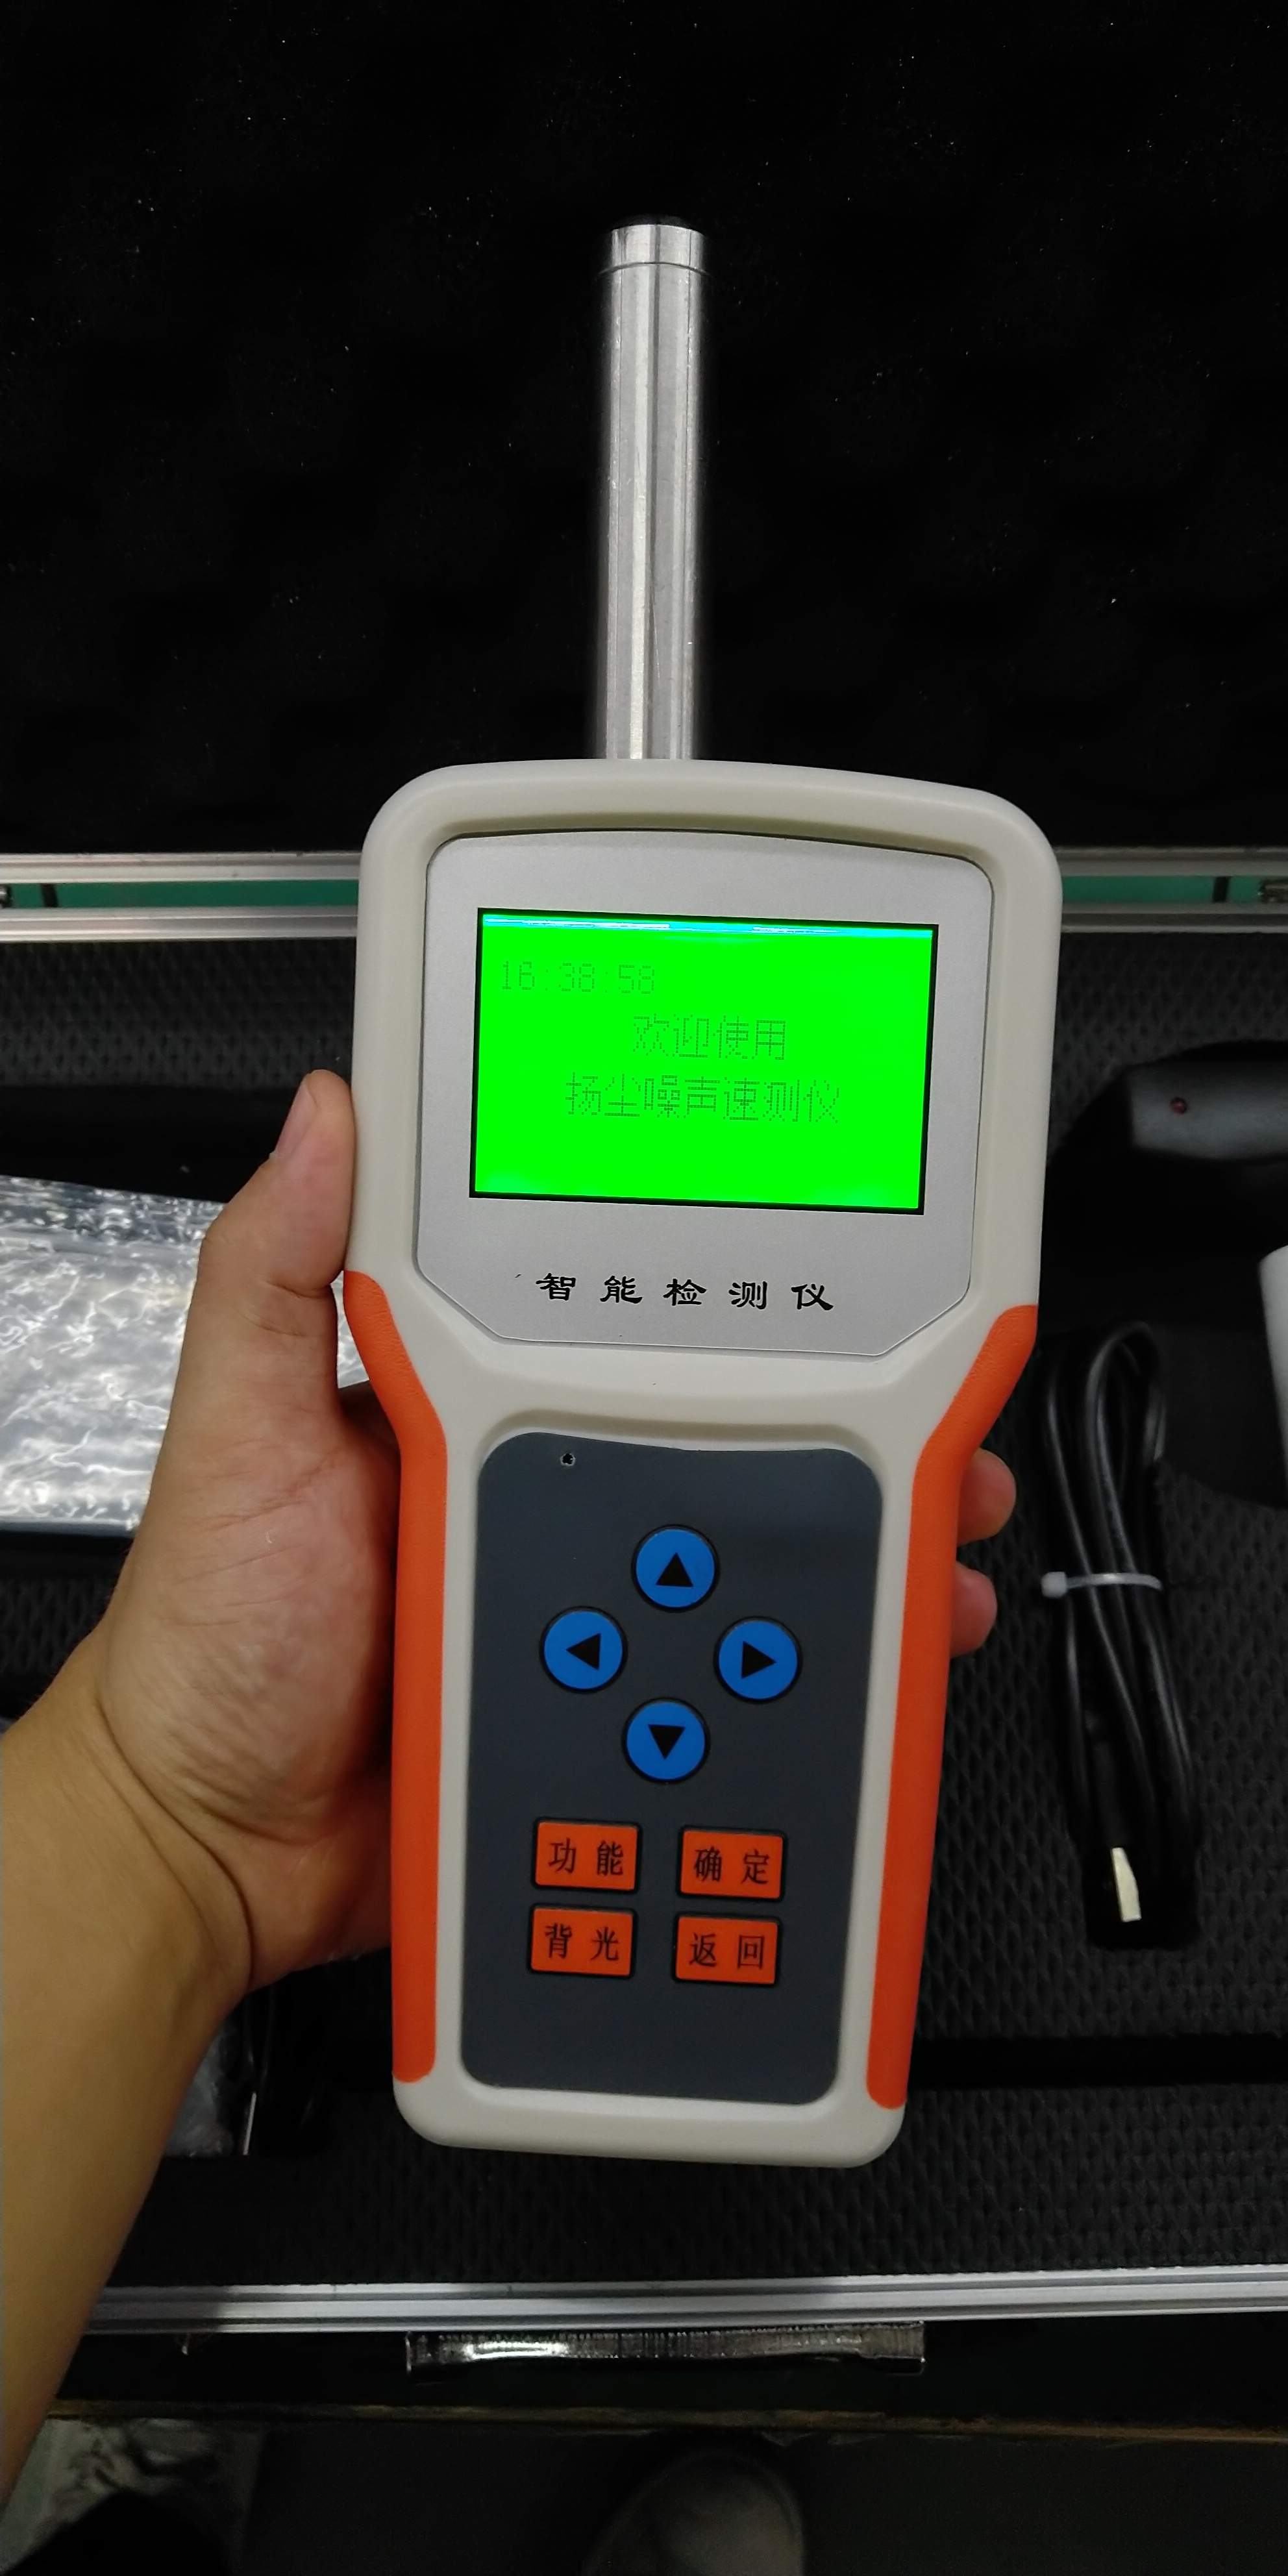 粉尘噪音标准值是多少 工地上用的移动手持式扬尘噪声检测仪